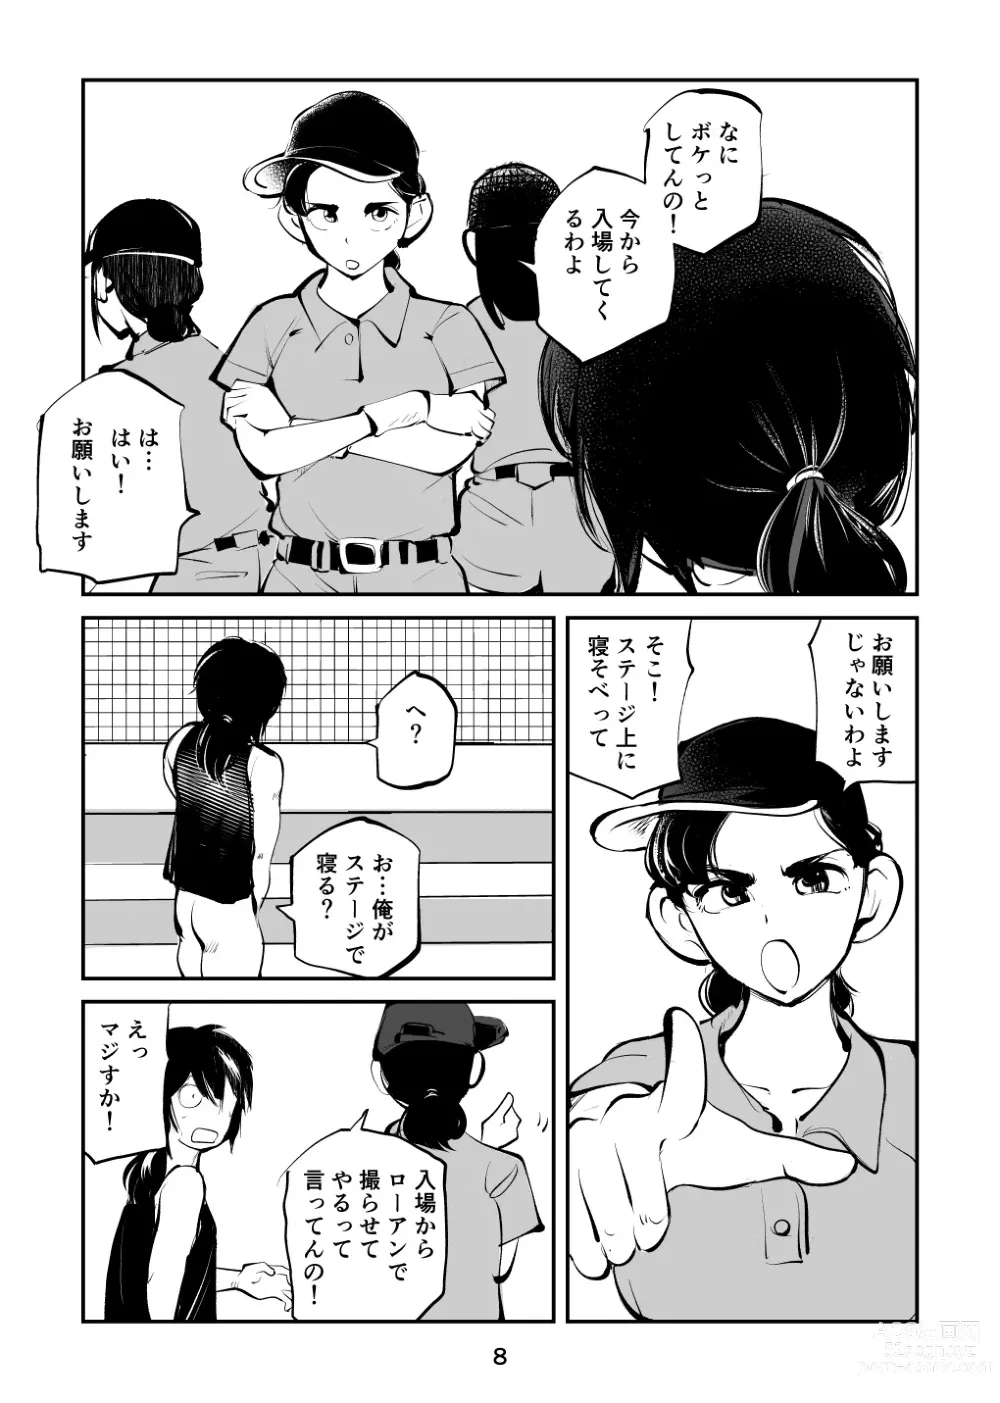 Page 8 of doujinshi Kinkeri Cheer Girl VS Tosatsuma Shakai Hito Cheer Girl-hen